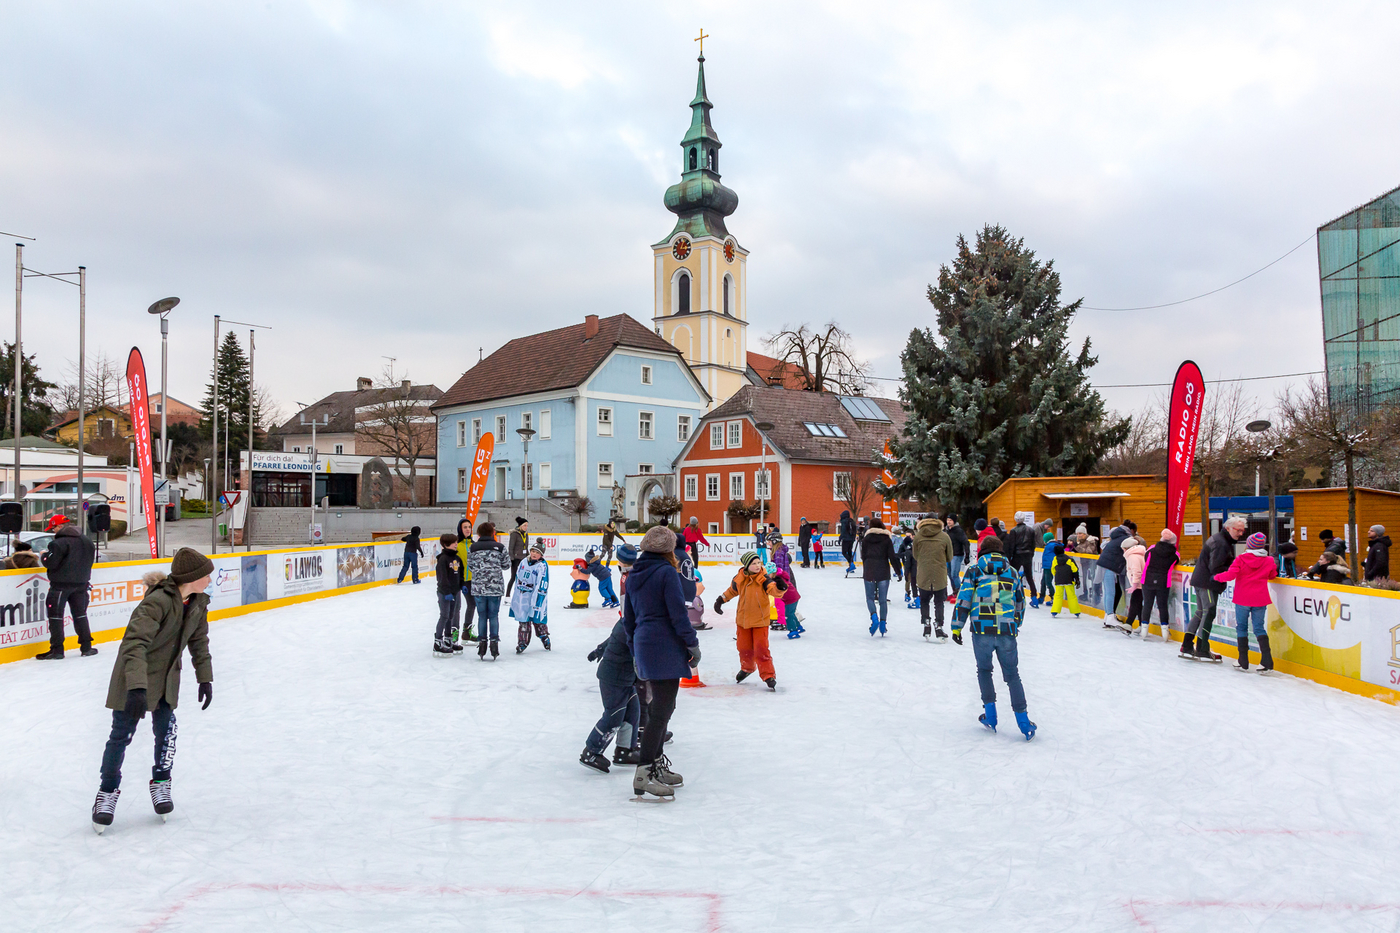 Eislaufplatz mit vielen Kindern, Hintergrund: Kirche und blaues Haus